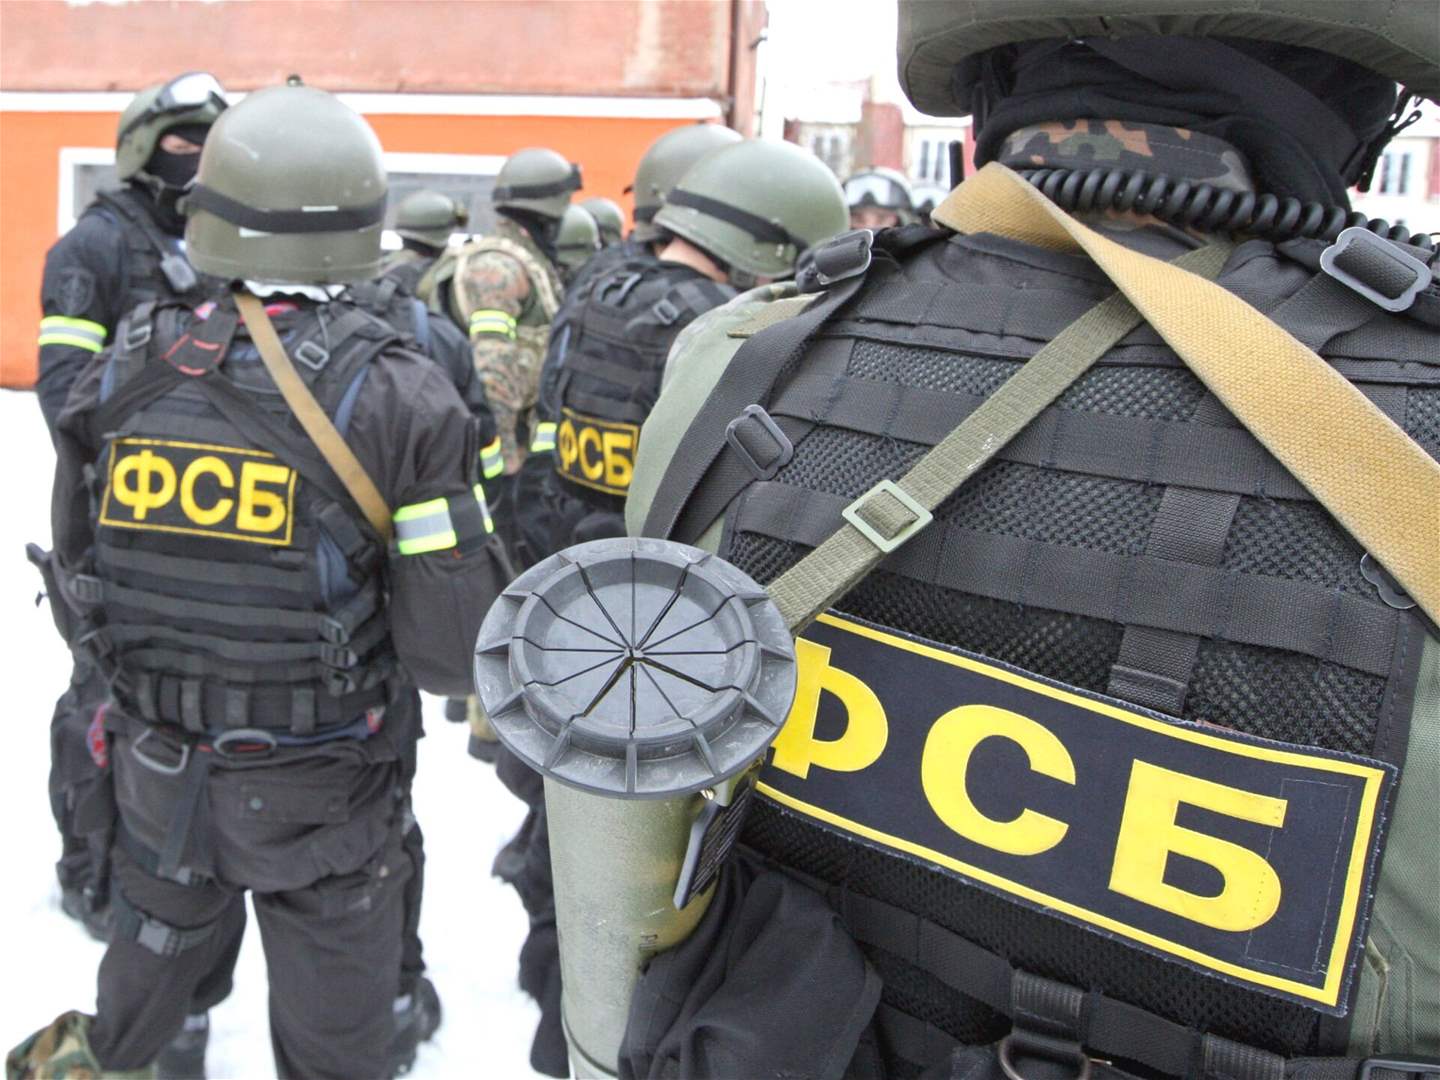 جهاز أمن الدولة الروسي: مقتل مسلحين كانا يعدان لتنفيذ أعمال إرهابية في روسيا